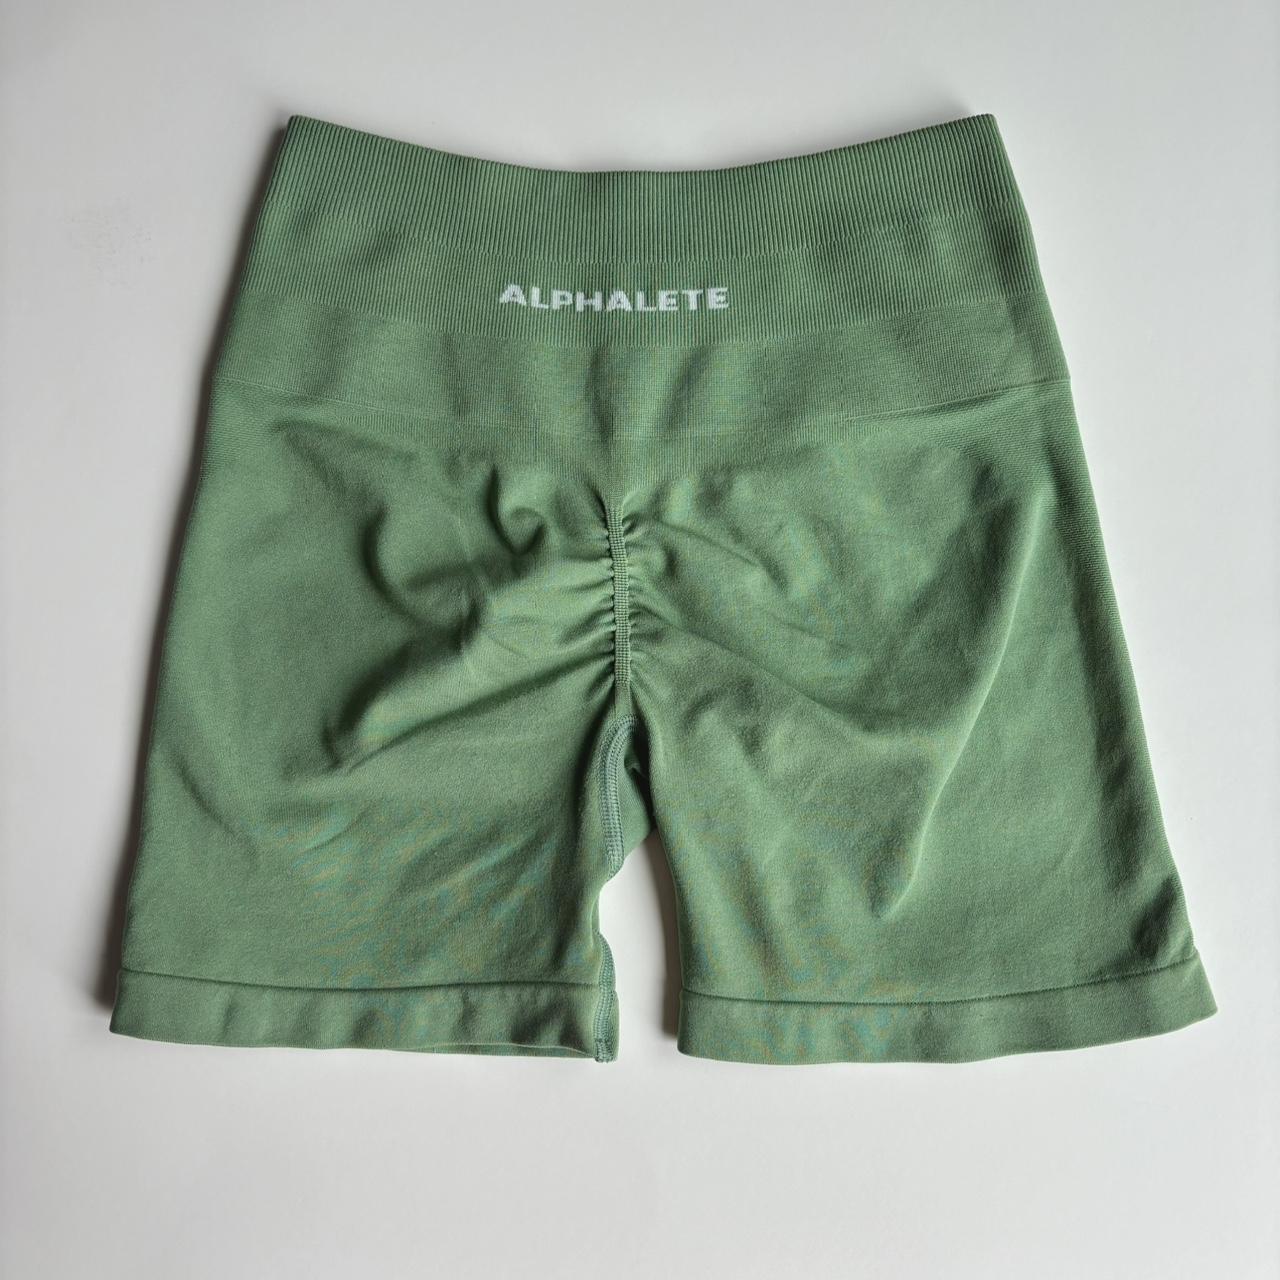 OG/RARE Alphalete Amplify in color dusty green size - Depop